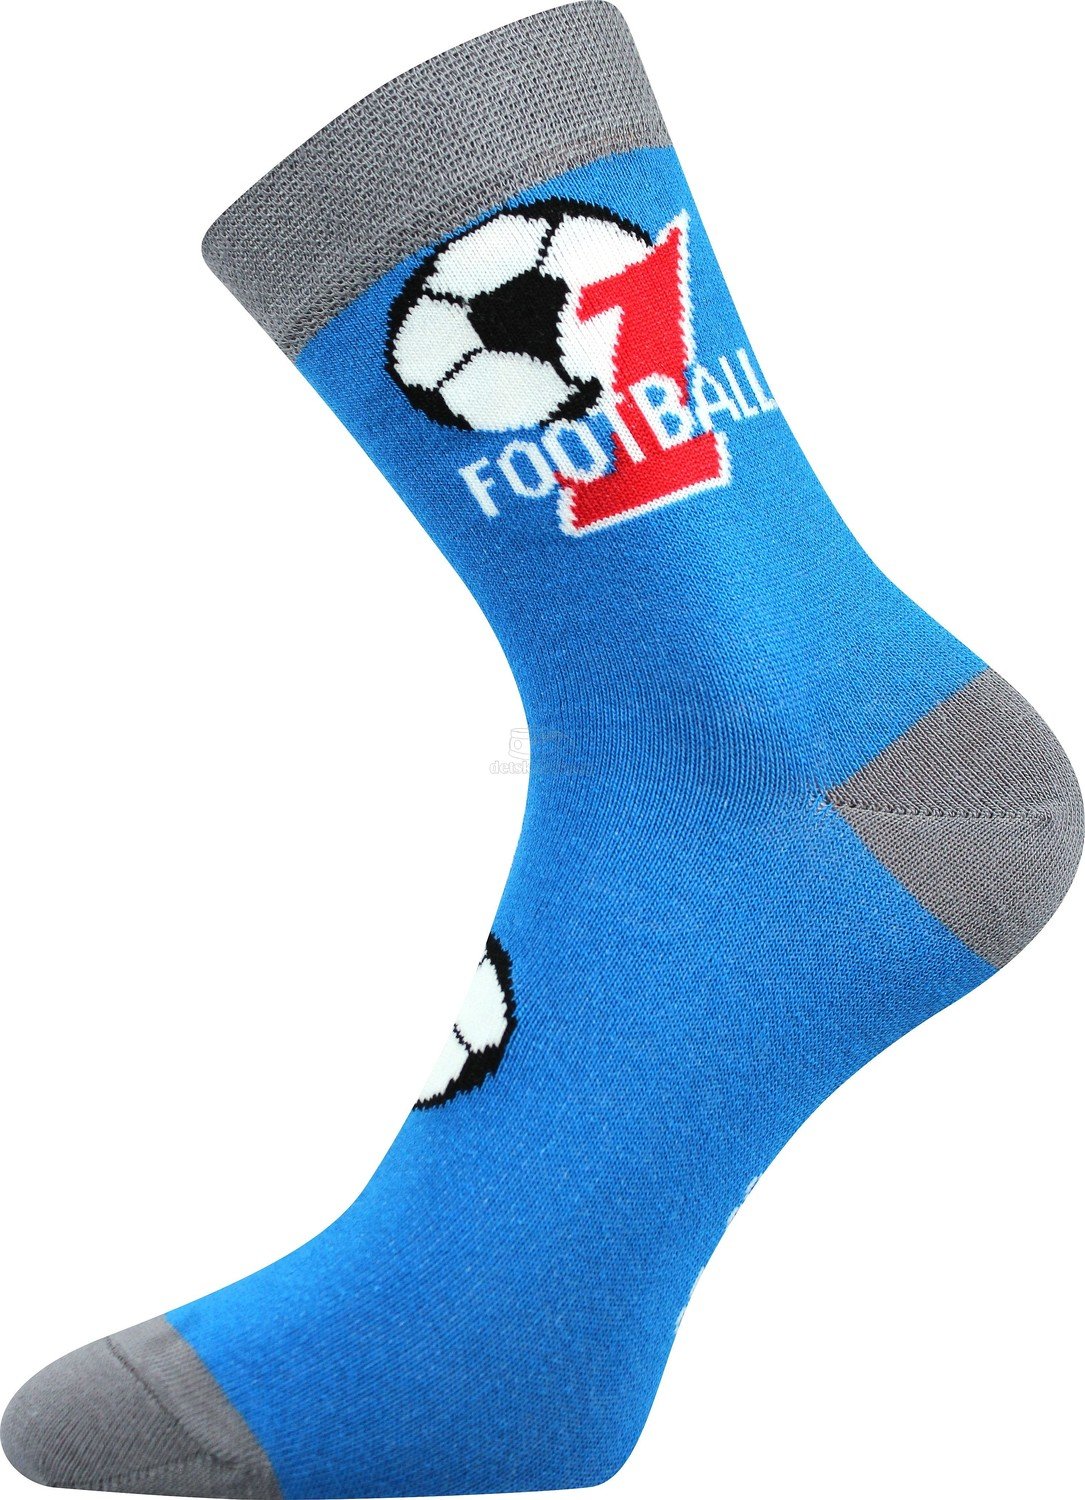 Ponožky Boma 057-21-43 fotbal Velikost: 25-29